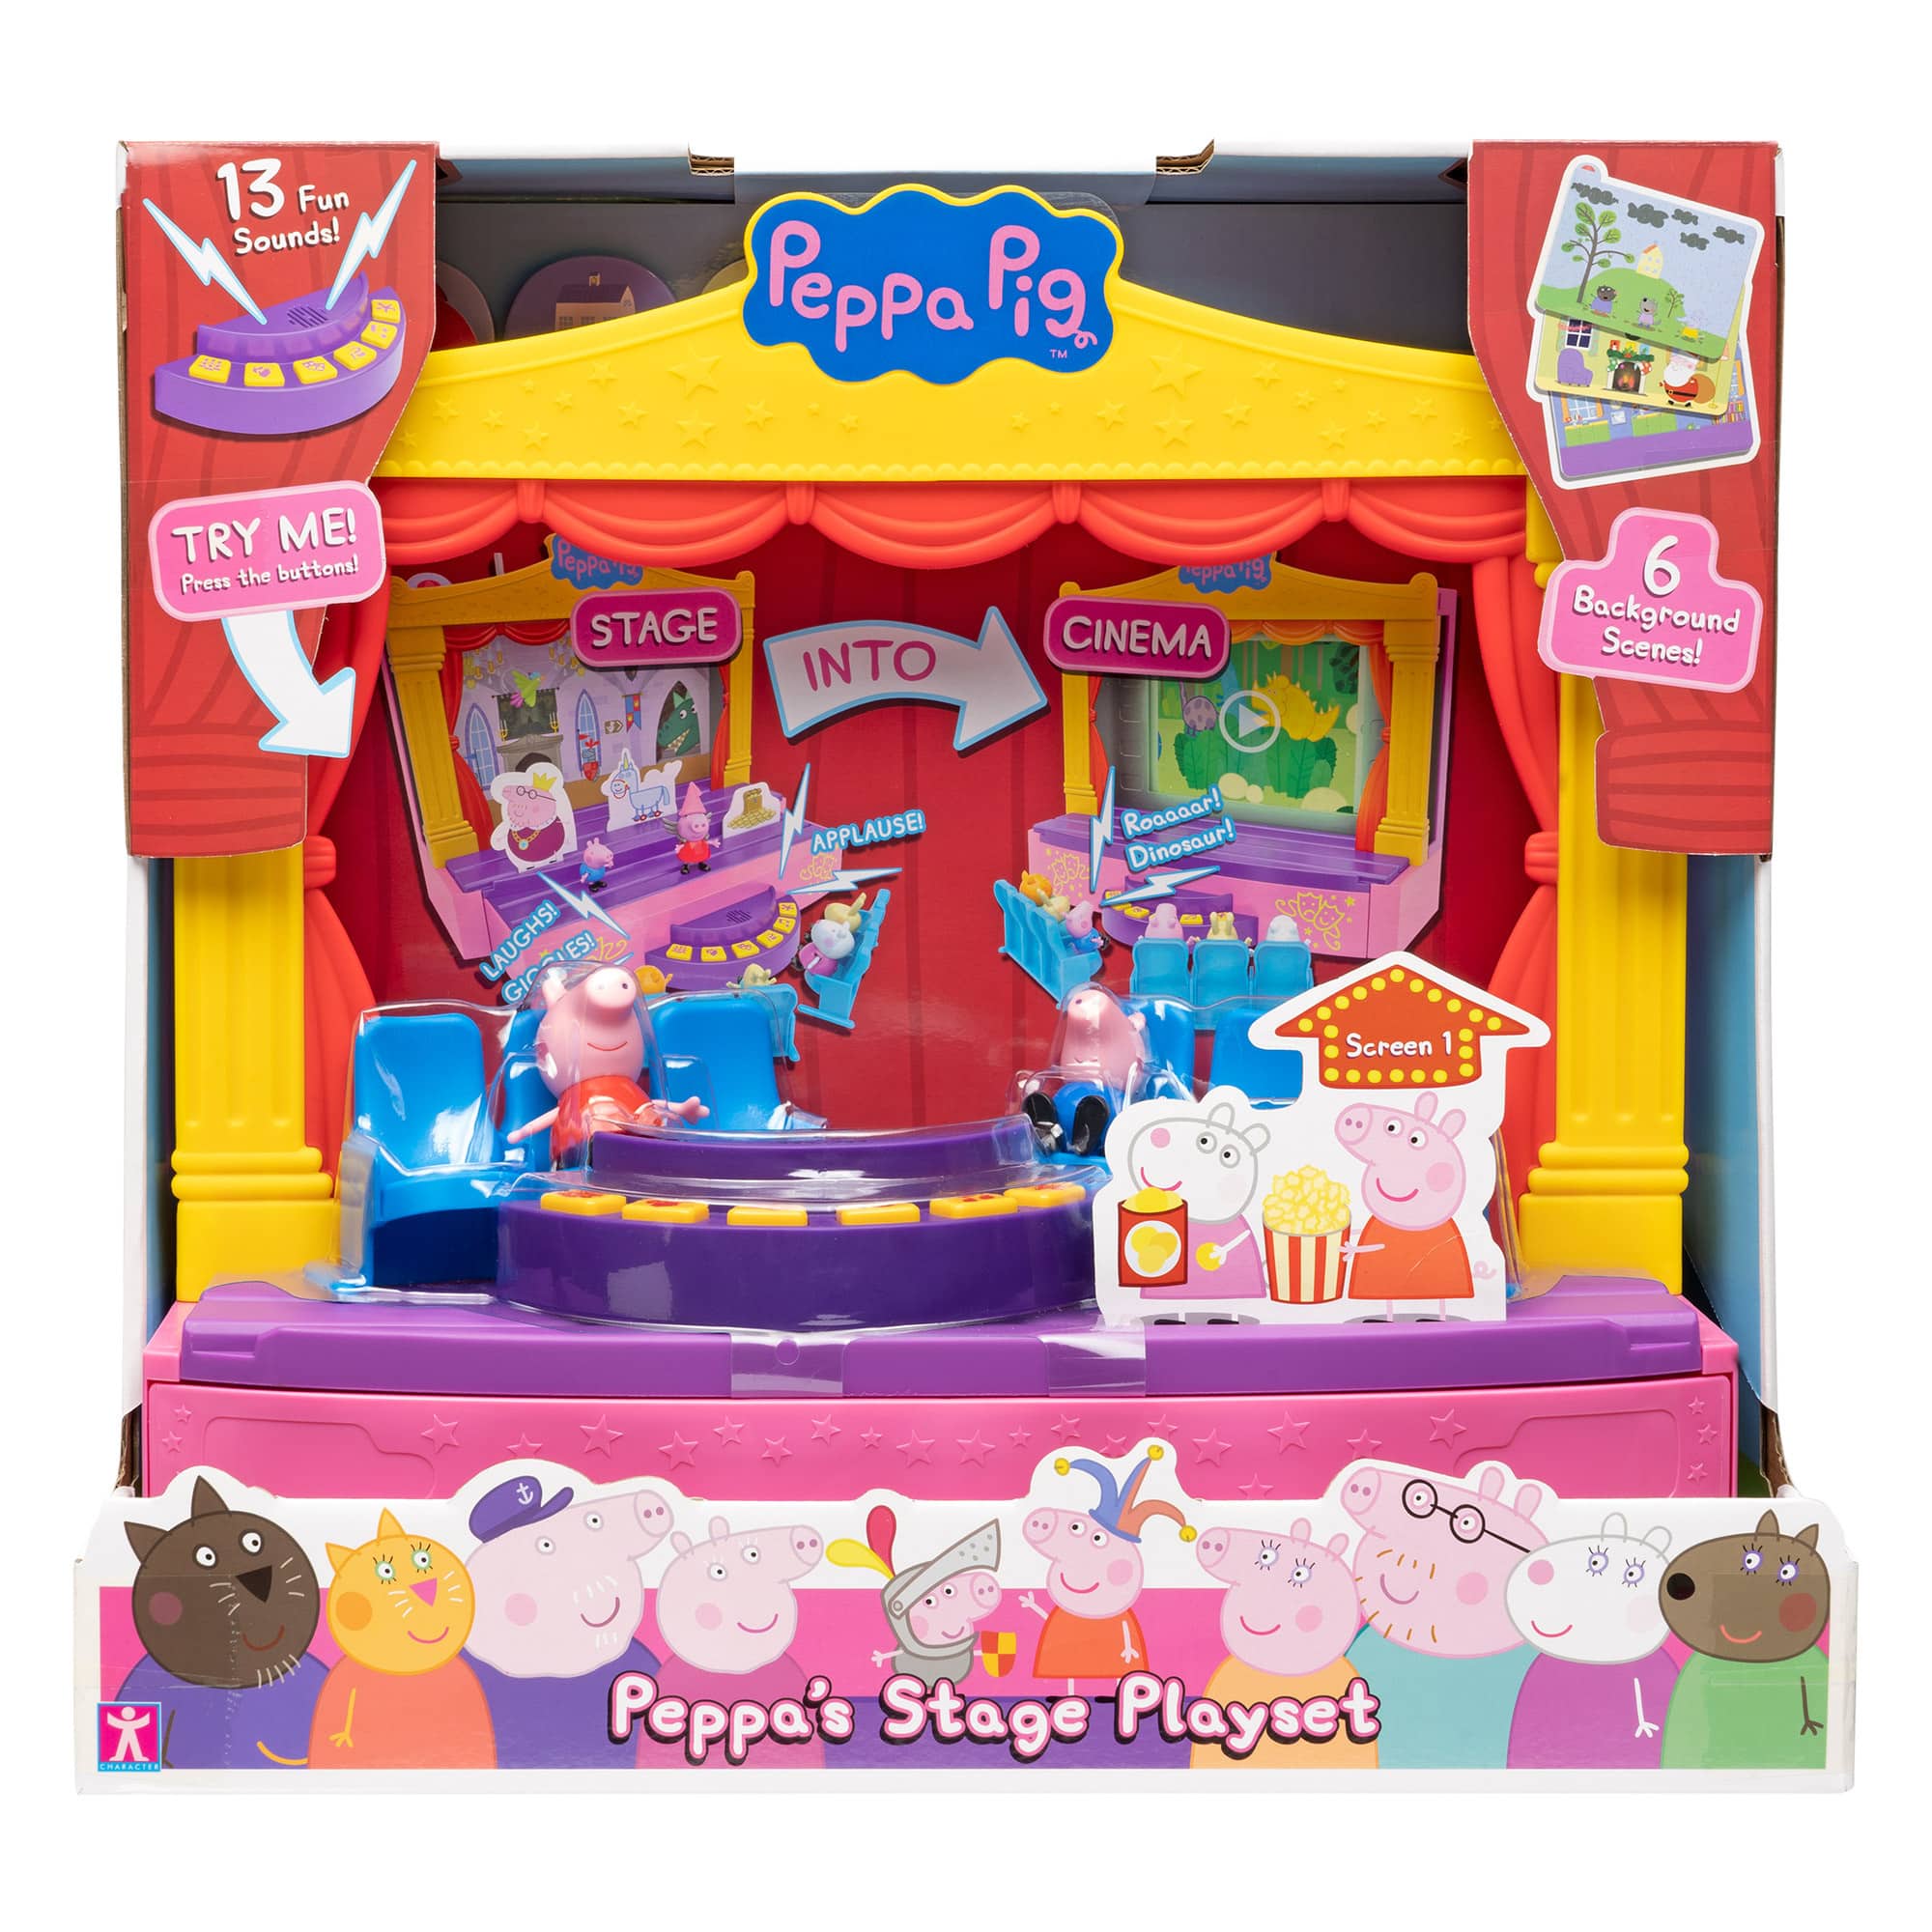 Peppa Pig - Peppa's Stage Playset